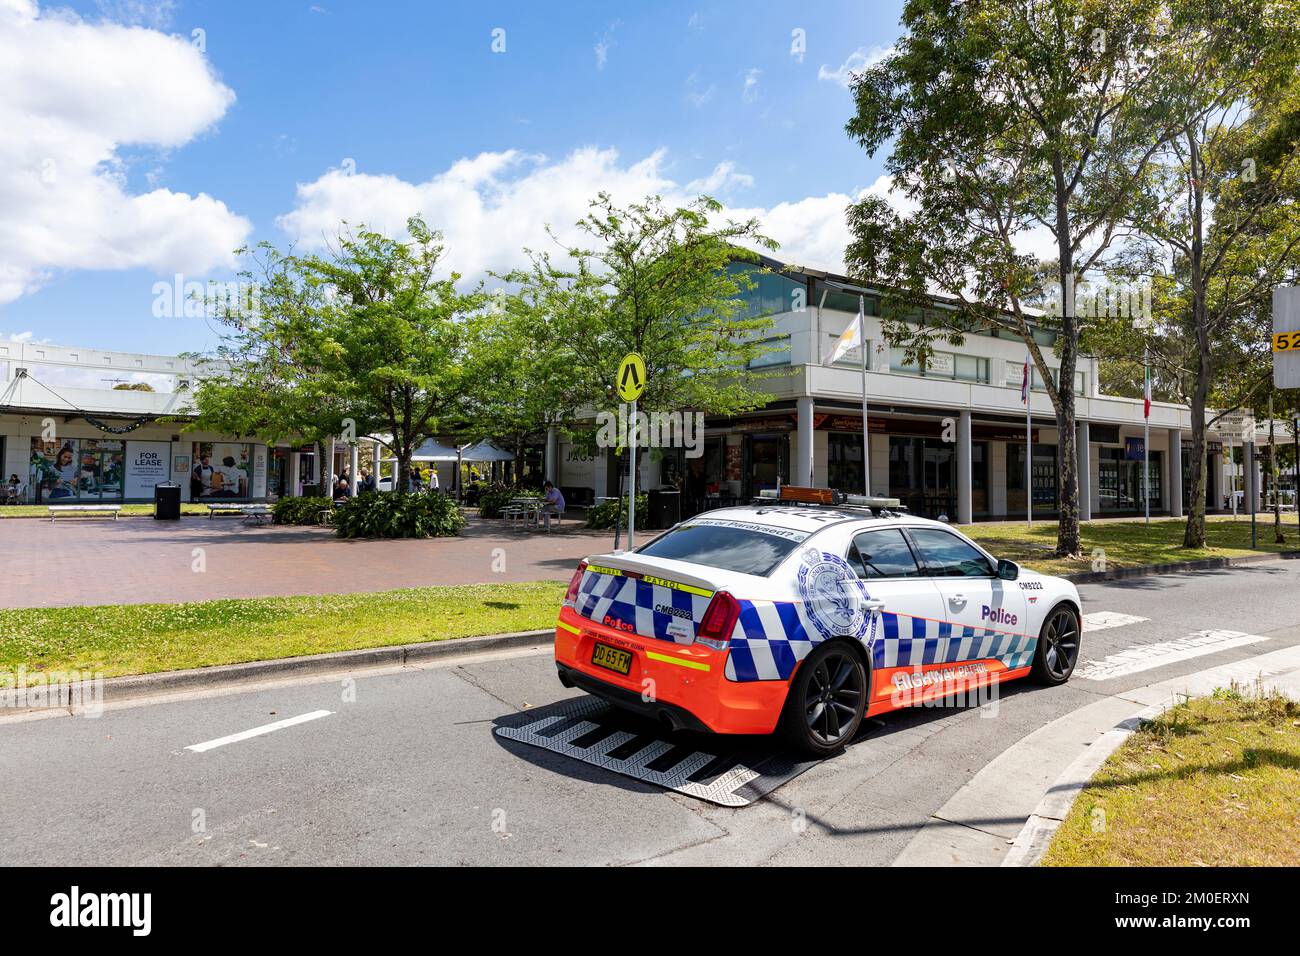 NSW Sydney police car, un véhicule de patrouille Chrysler Highway dans la banlieue de Newington, Sydney, Australie Banque D'Images